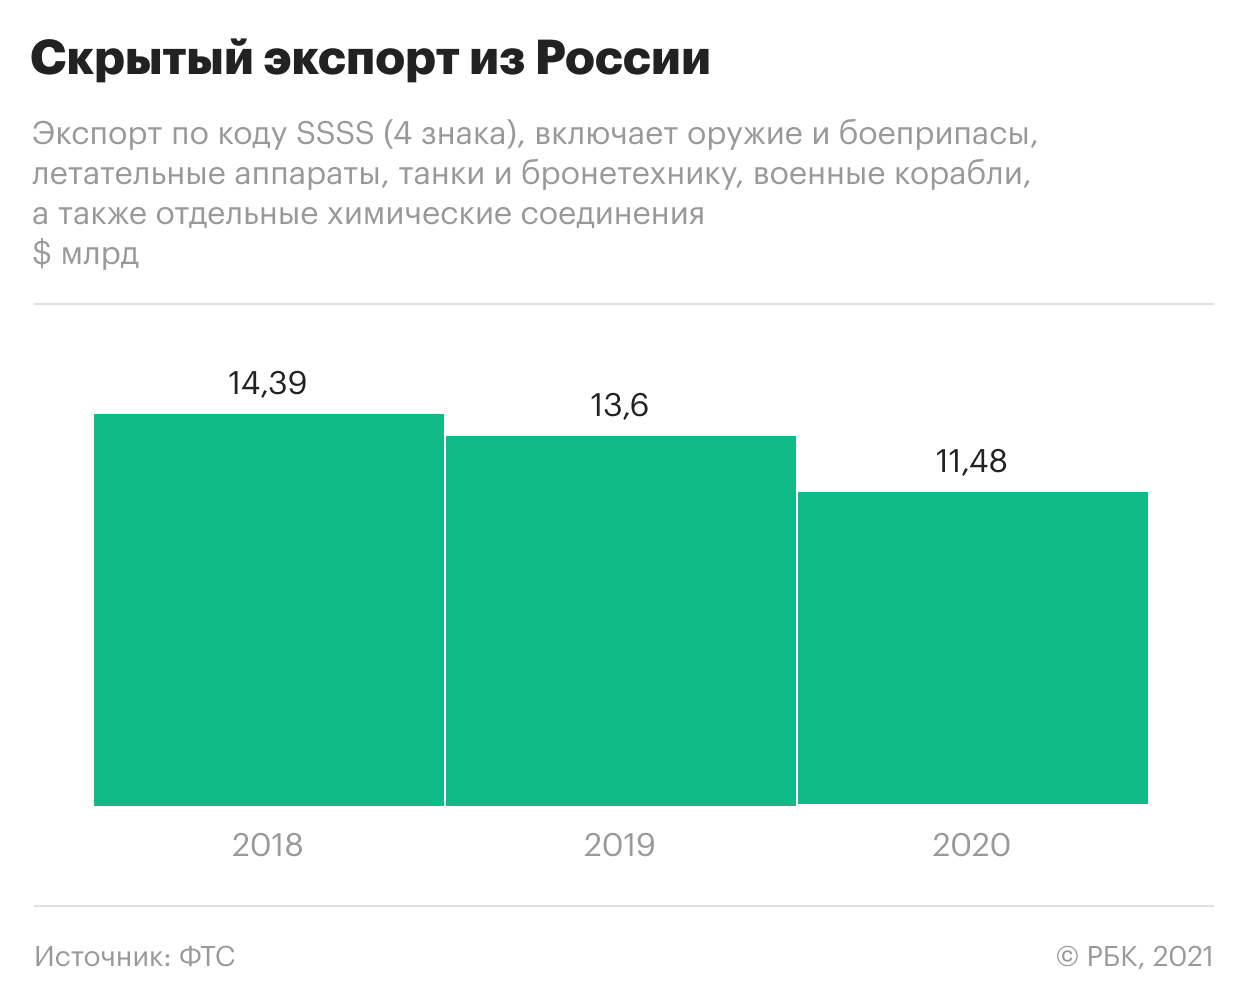 Пандемия сократила секретный экспорт из России